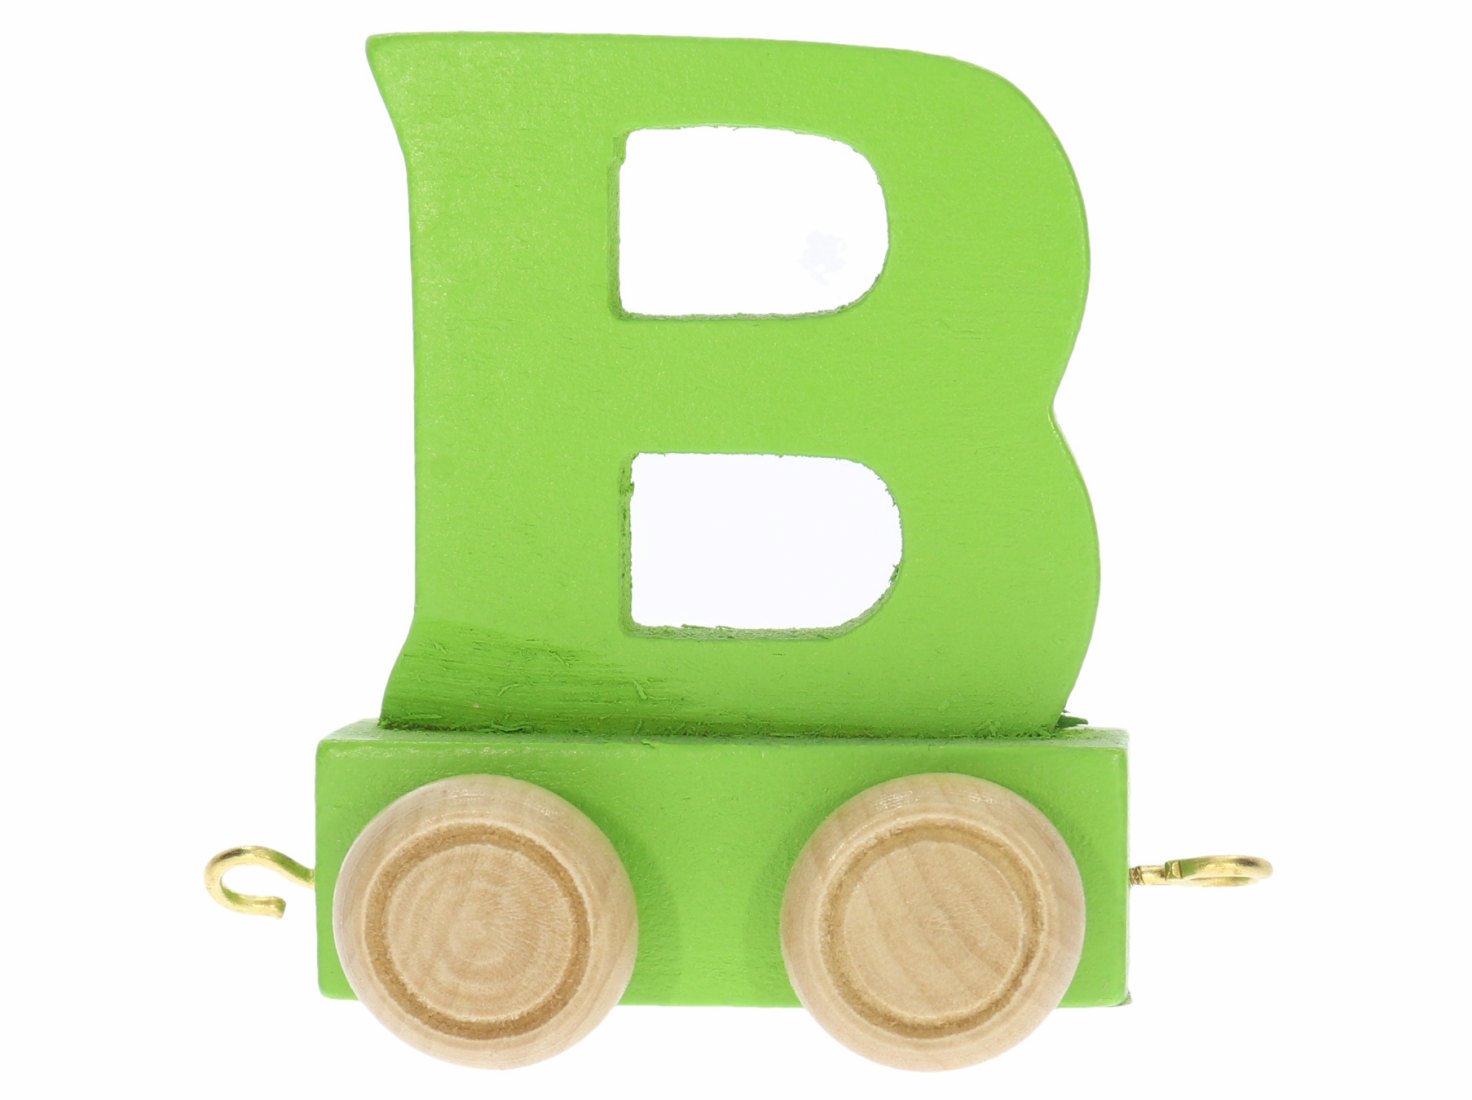 Buchstabe - B -Buchstabenzug von small foot Holzeisenbahn Namenszug bunt